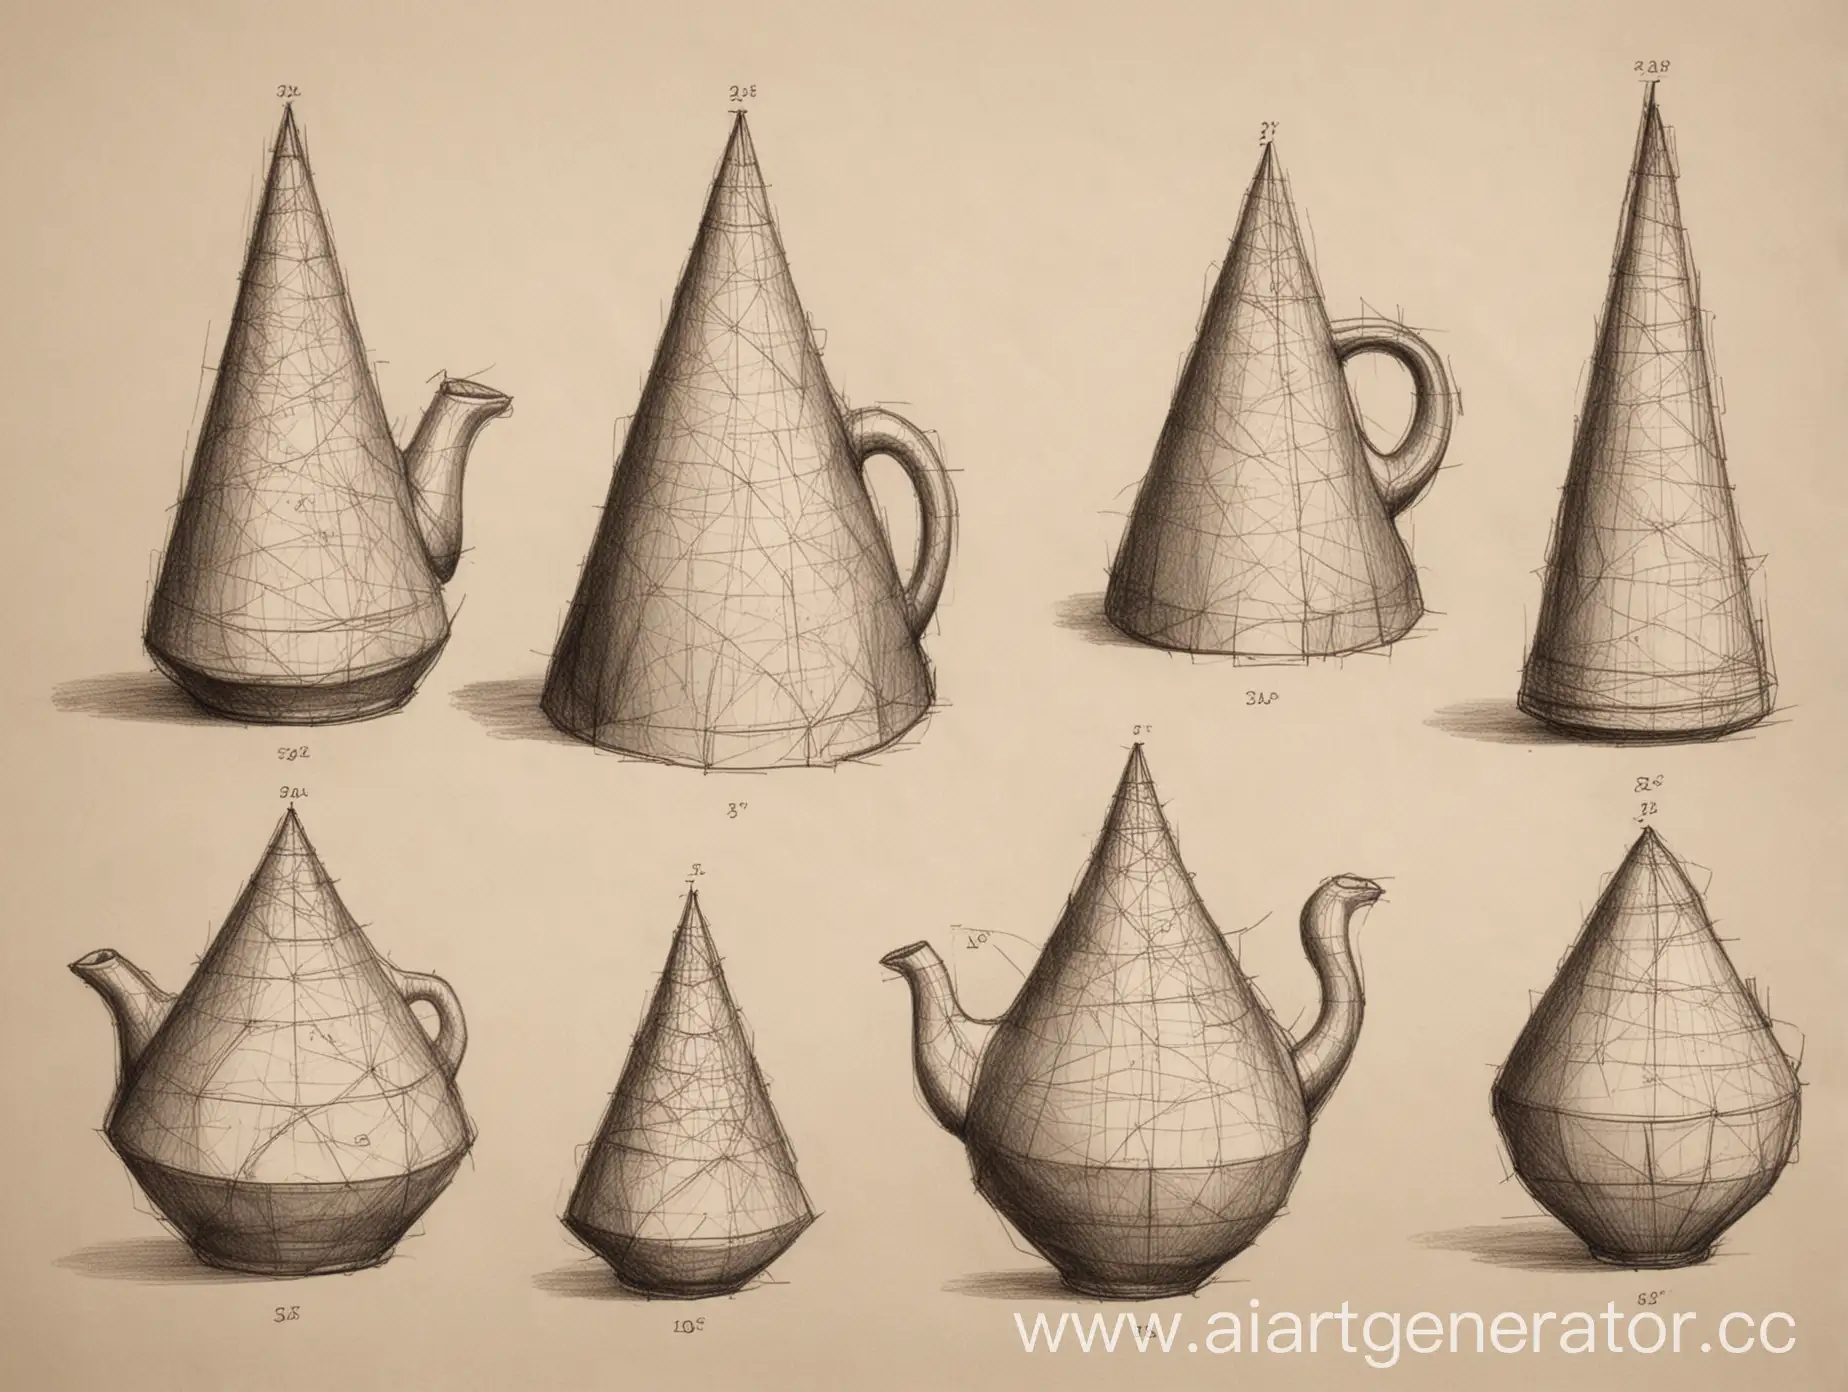 Нарисовать академический рисунок на основе формы конуса, конусов (различных диаметров и высот) выполнить - разработать новую форму чайника - который может быть не совсем пригоден для кипячения воды, но идея- является основой. Рисунок выполняется в объеме со штриховкой.